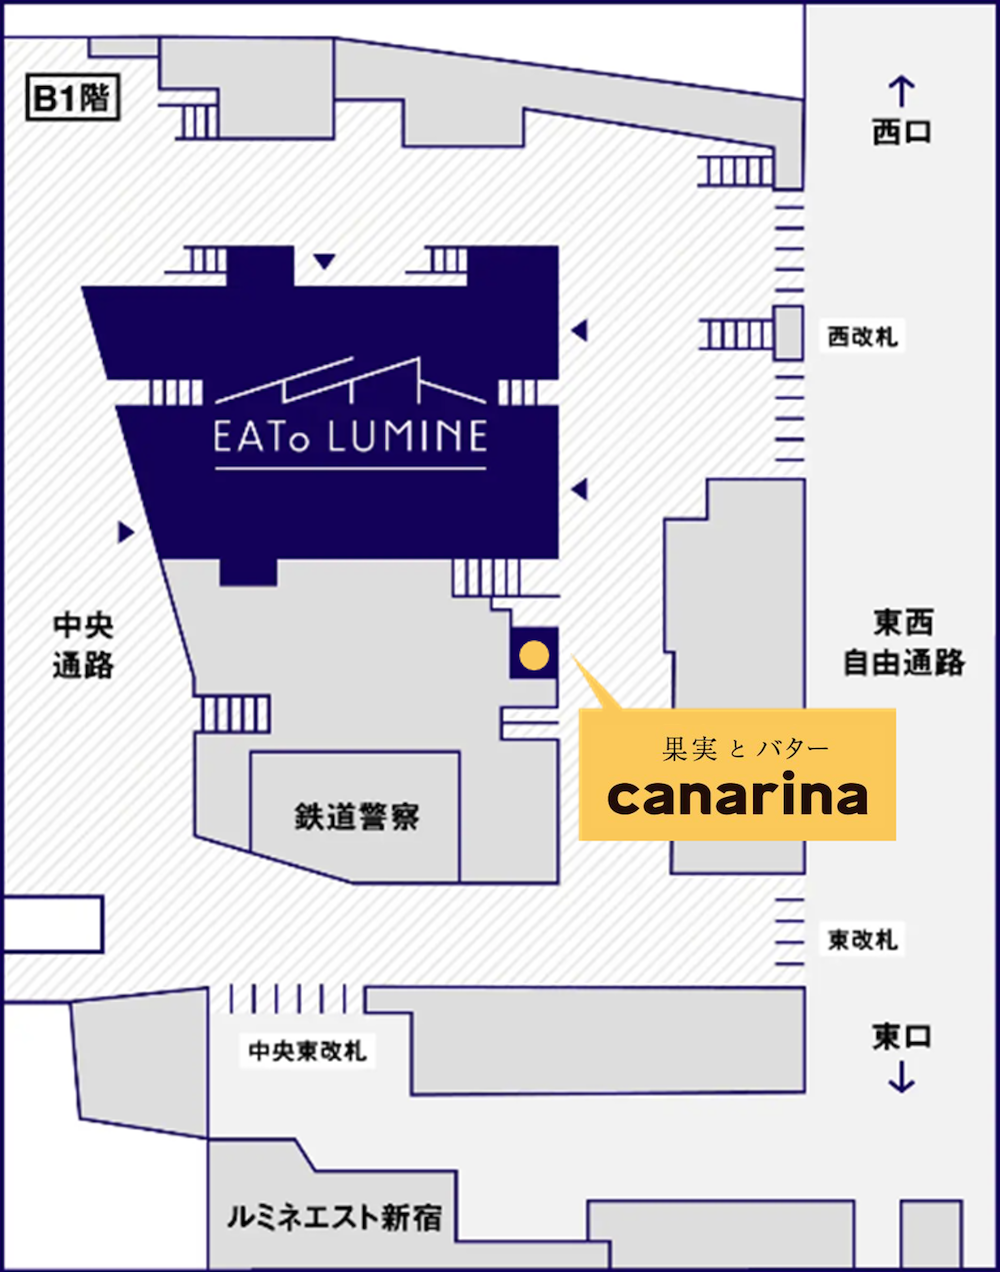 「果実とバター canarina」店舗マップ